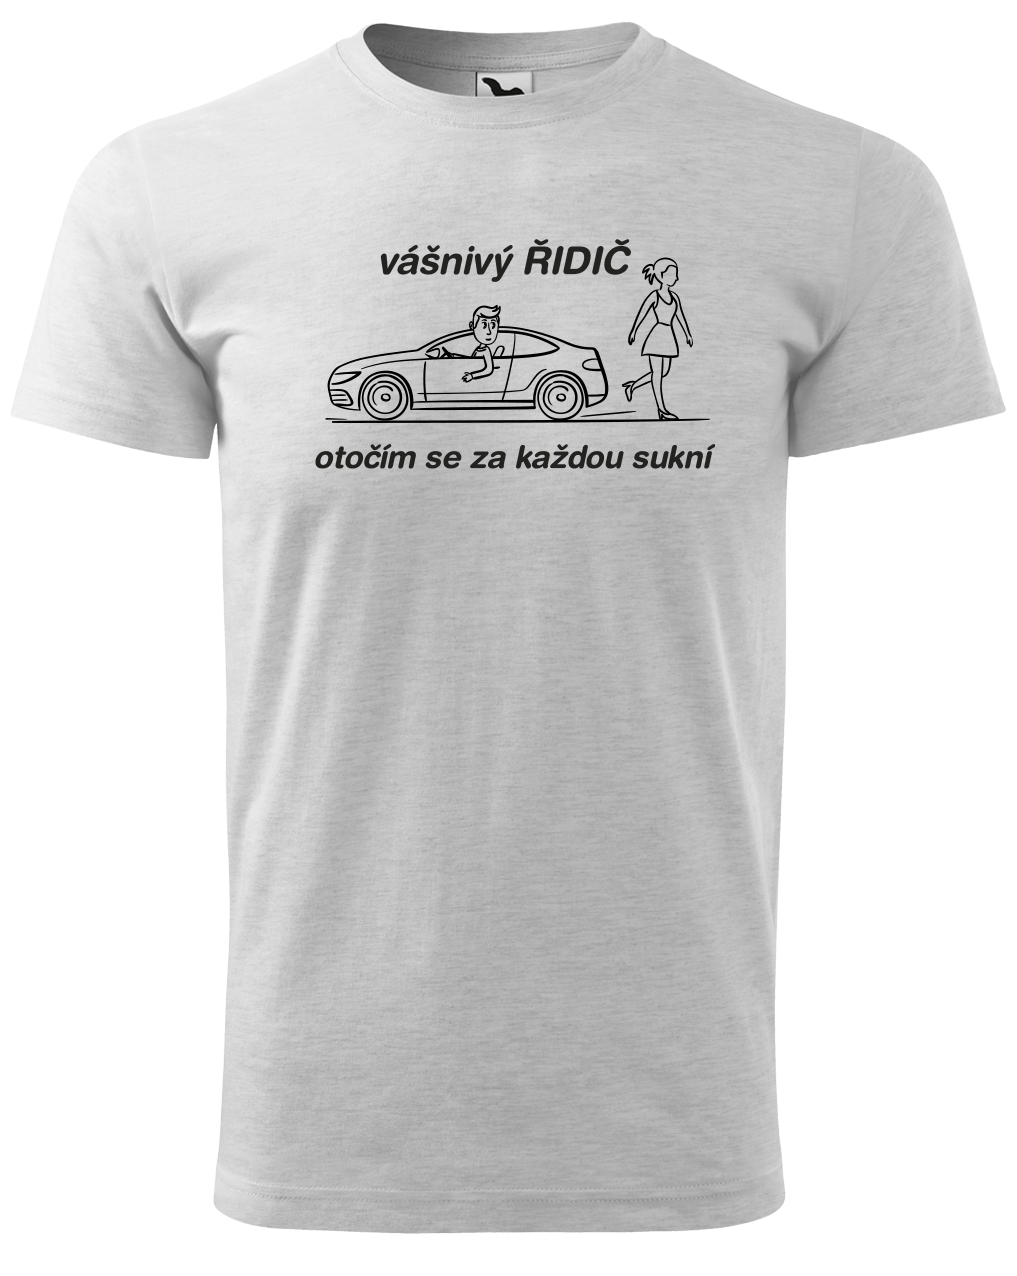 Vtipné tričko pro řidiče - Vášnivý řidič Velikost: M, Barva: Světle šedý melír (03)